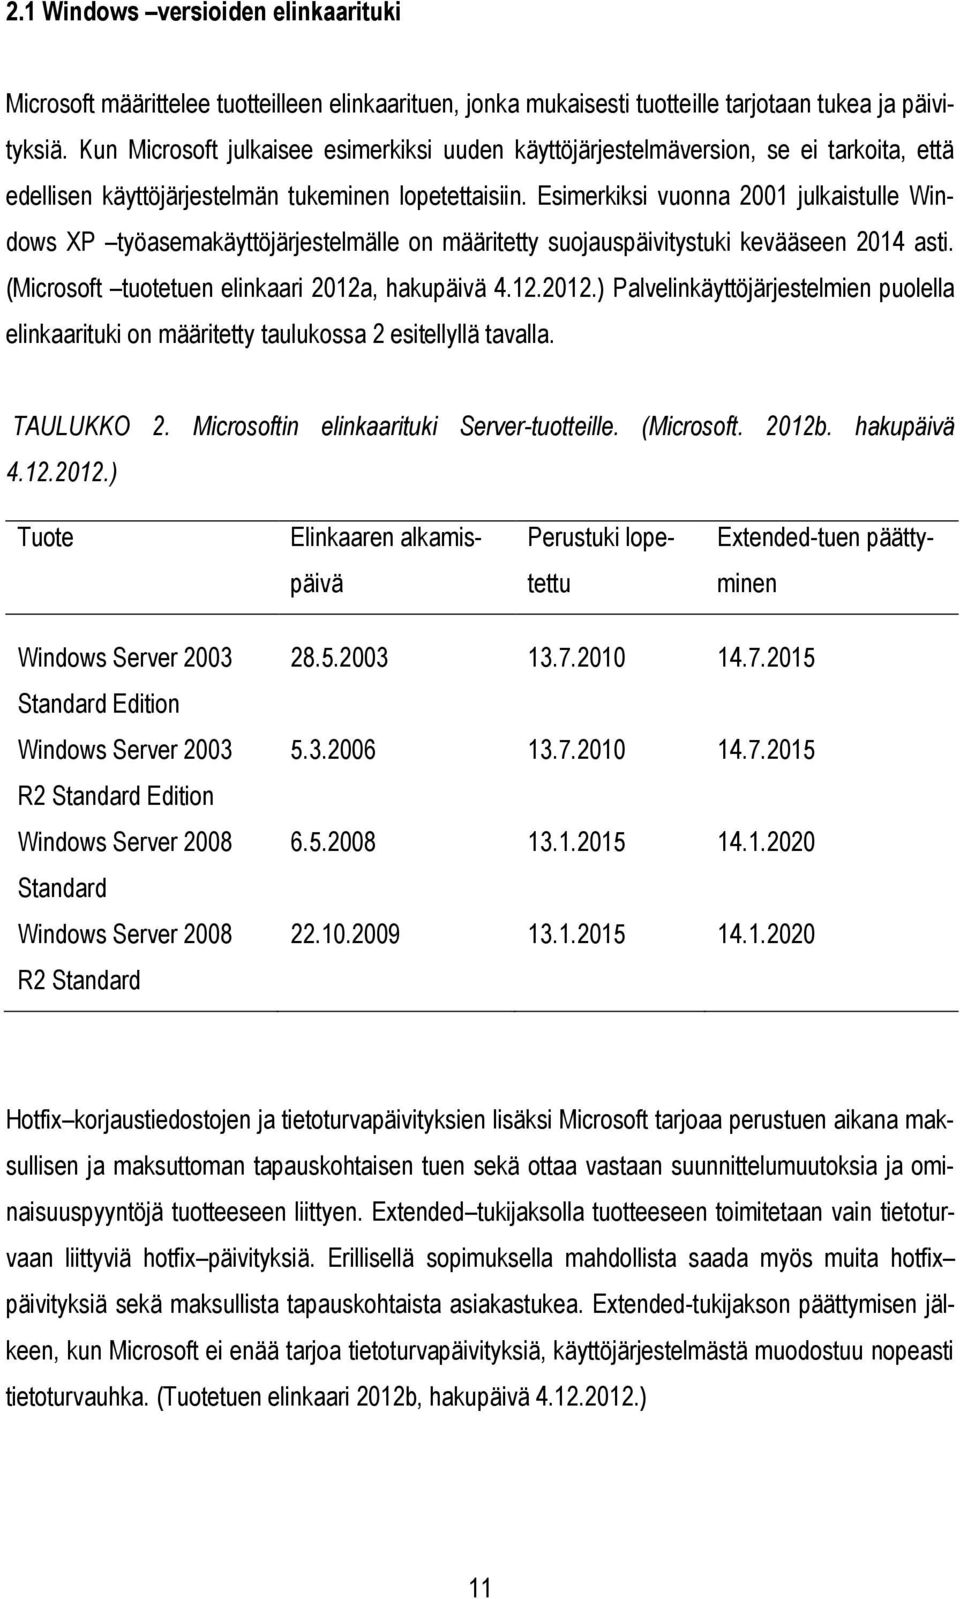 Esimerkiksi vuonna 2001 julkaistulle Windows XP työasemakäyttöjärjestelmälle on määritetty suojauspäivitystuki kevääseen 2014 asti. (Microsoft tuotetuen elinkaari 2012a